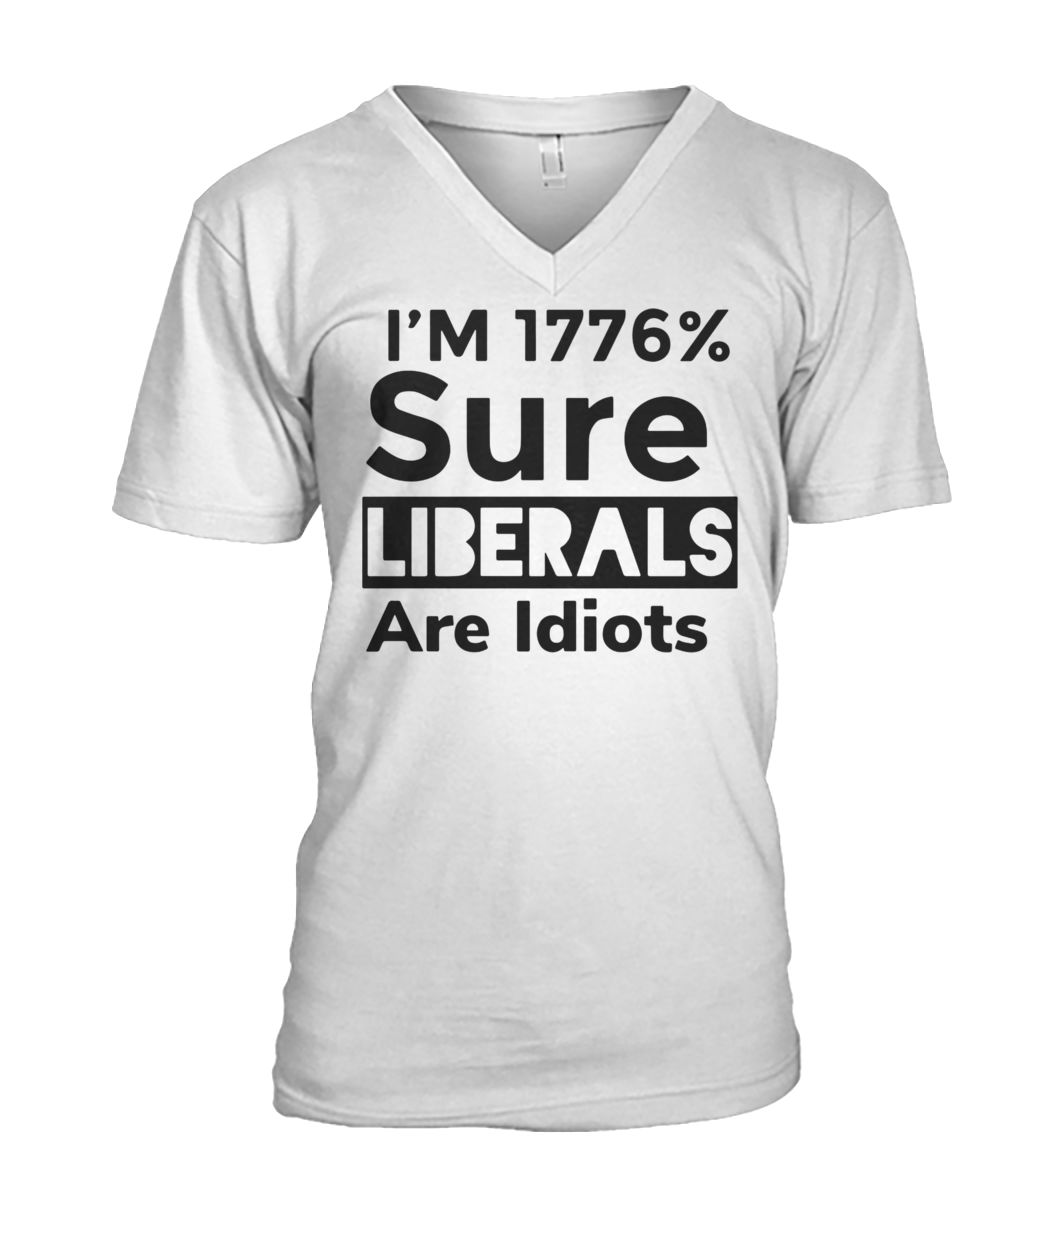 I'm 1776% sure liberals are idiots mens v-neck